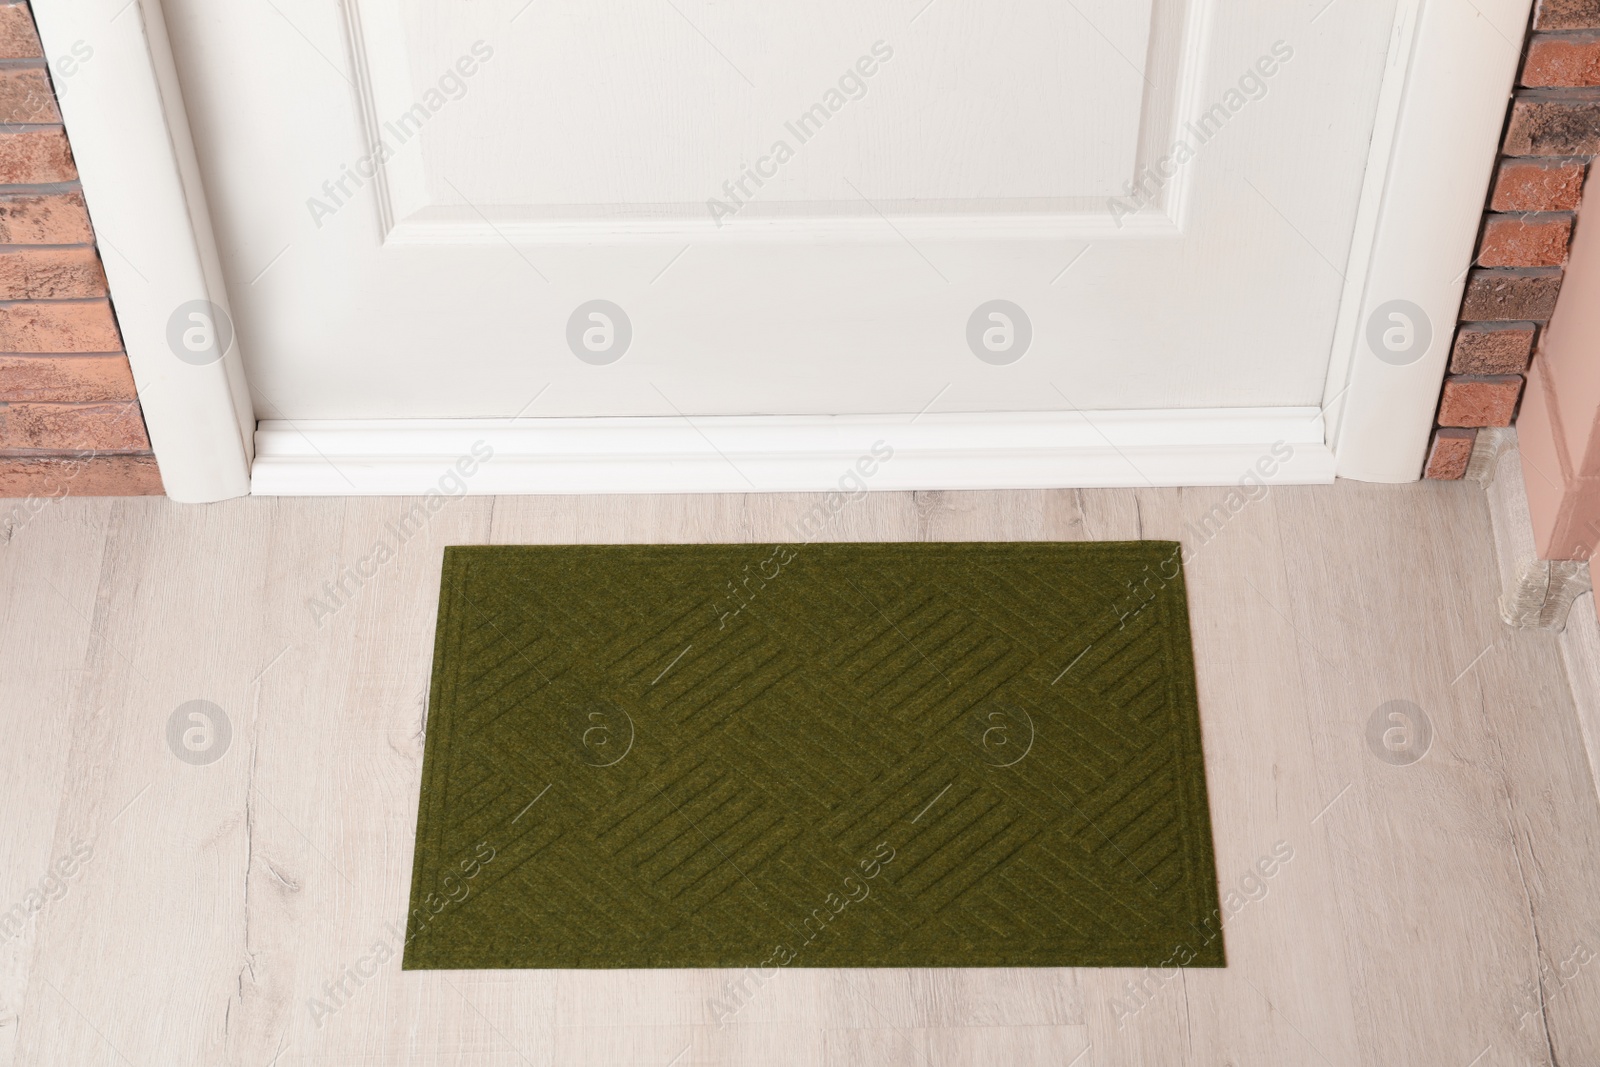 Photo of Dark olive door mat on wooden floor in hall, above view